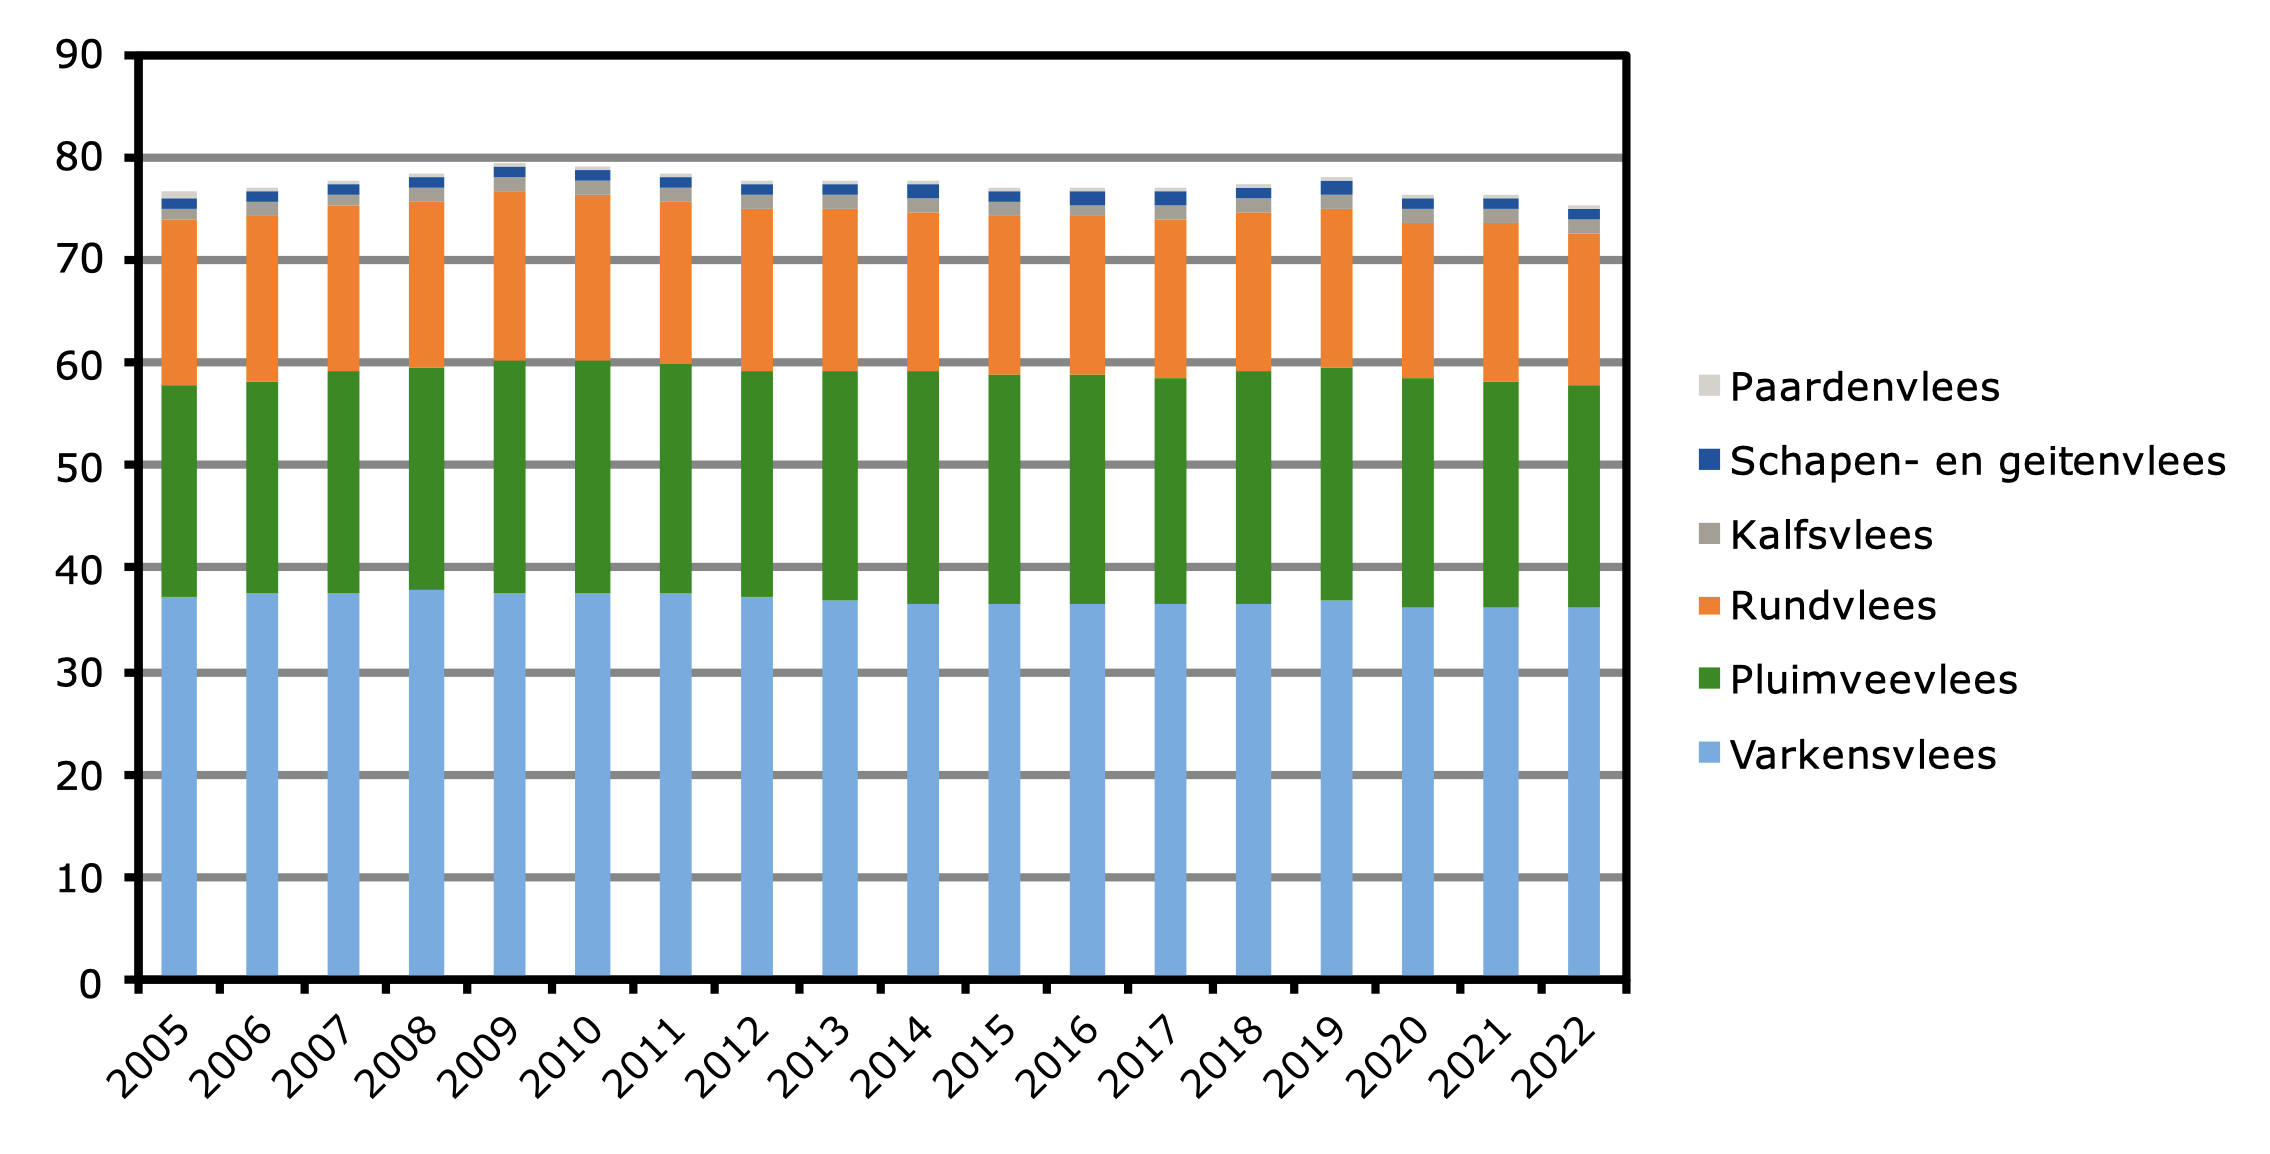 Vleesverbruik a) per hoofd van de bevolking in Nederland, 2005-2022 (kg)
a) Op basis van karkasgewicht (gewicht met been).